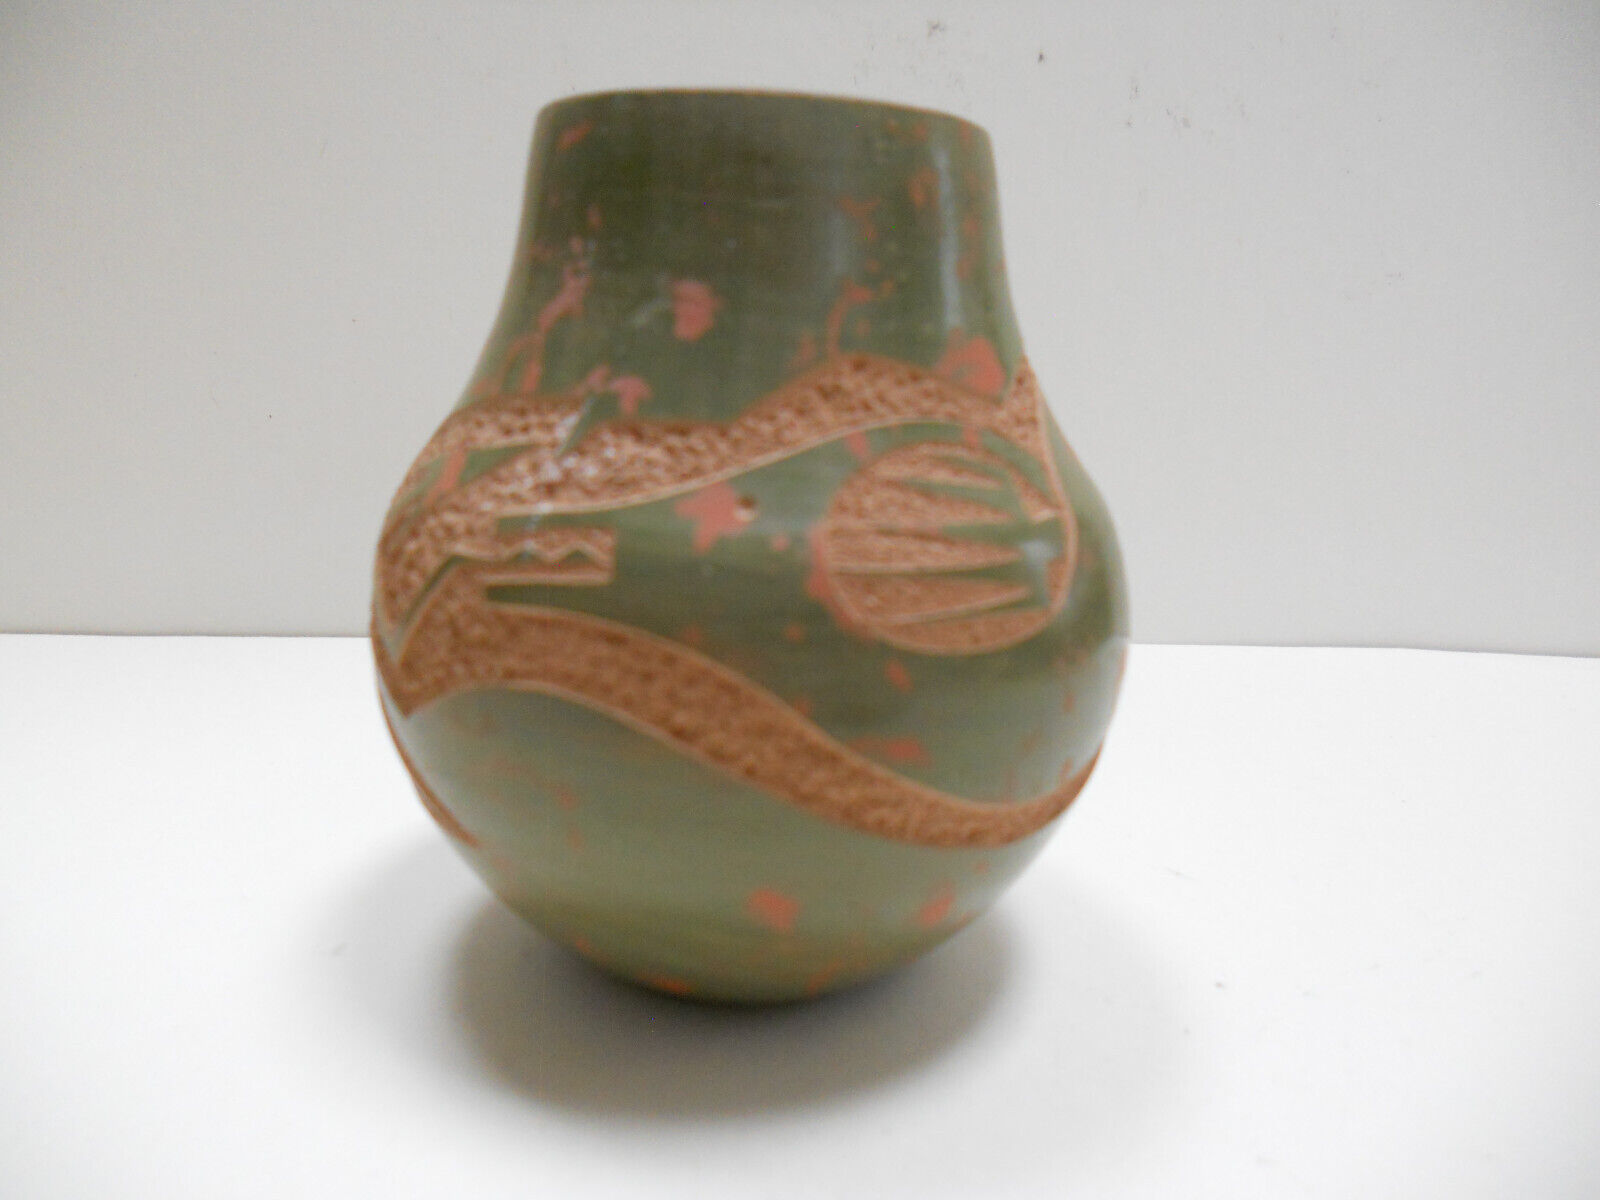  Rare San Ildefonso pottery by Tse Pe Gonzales